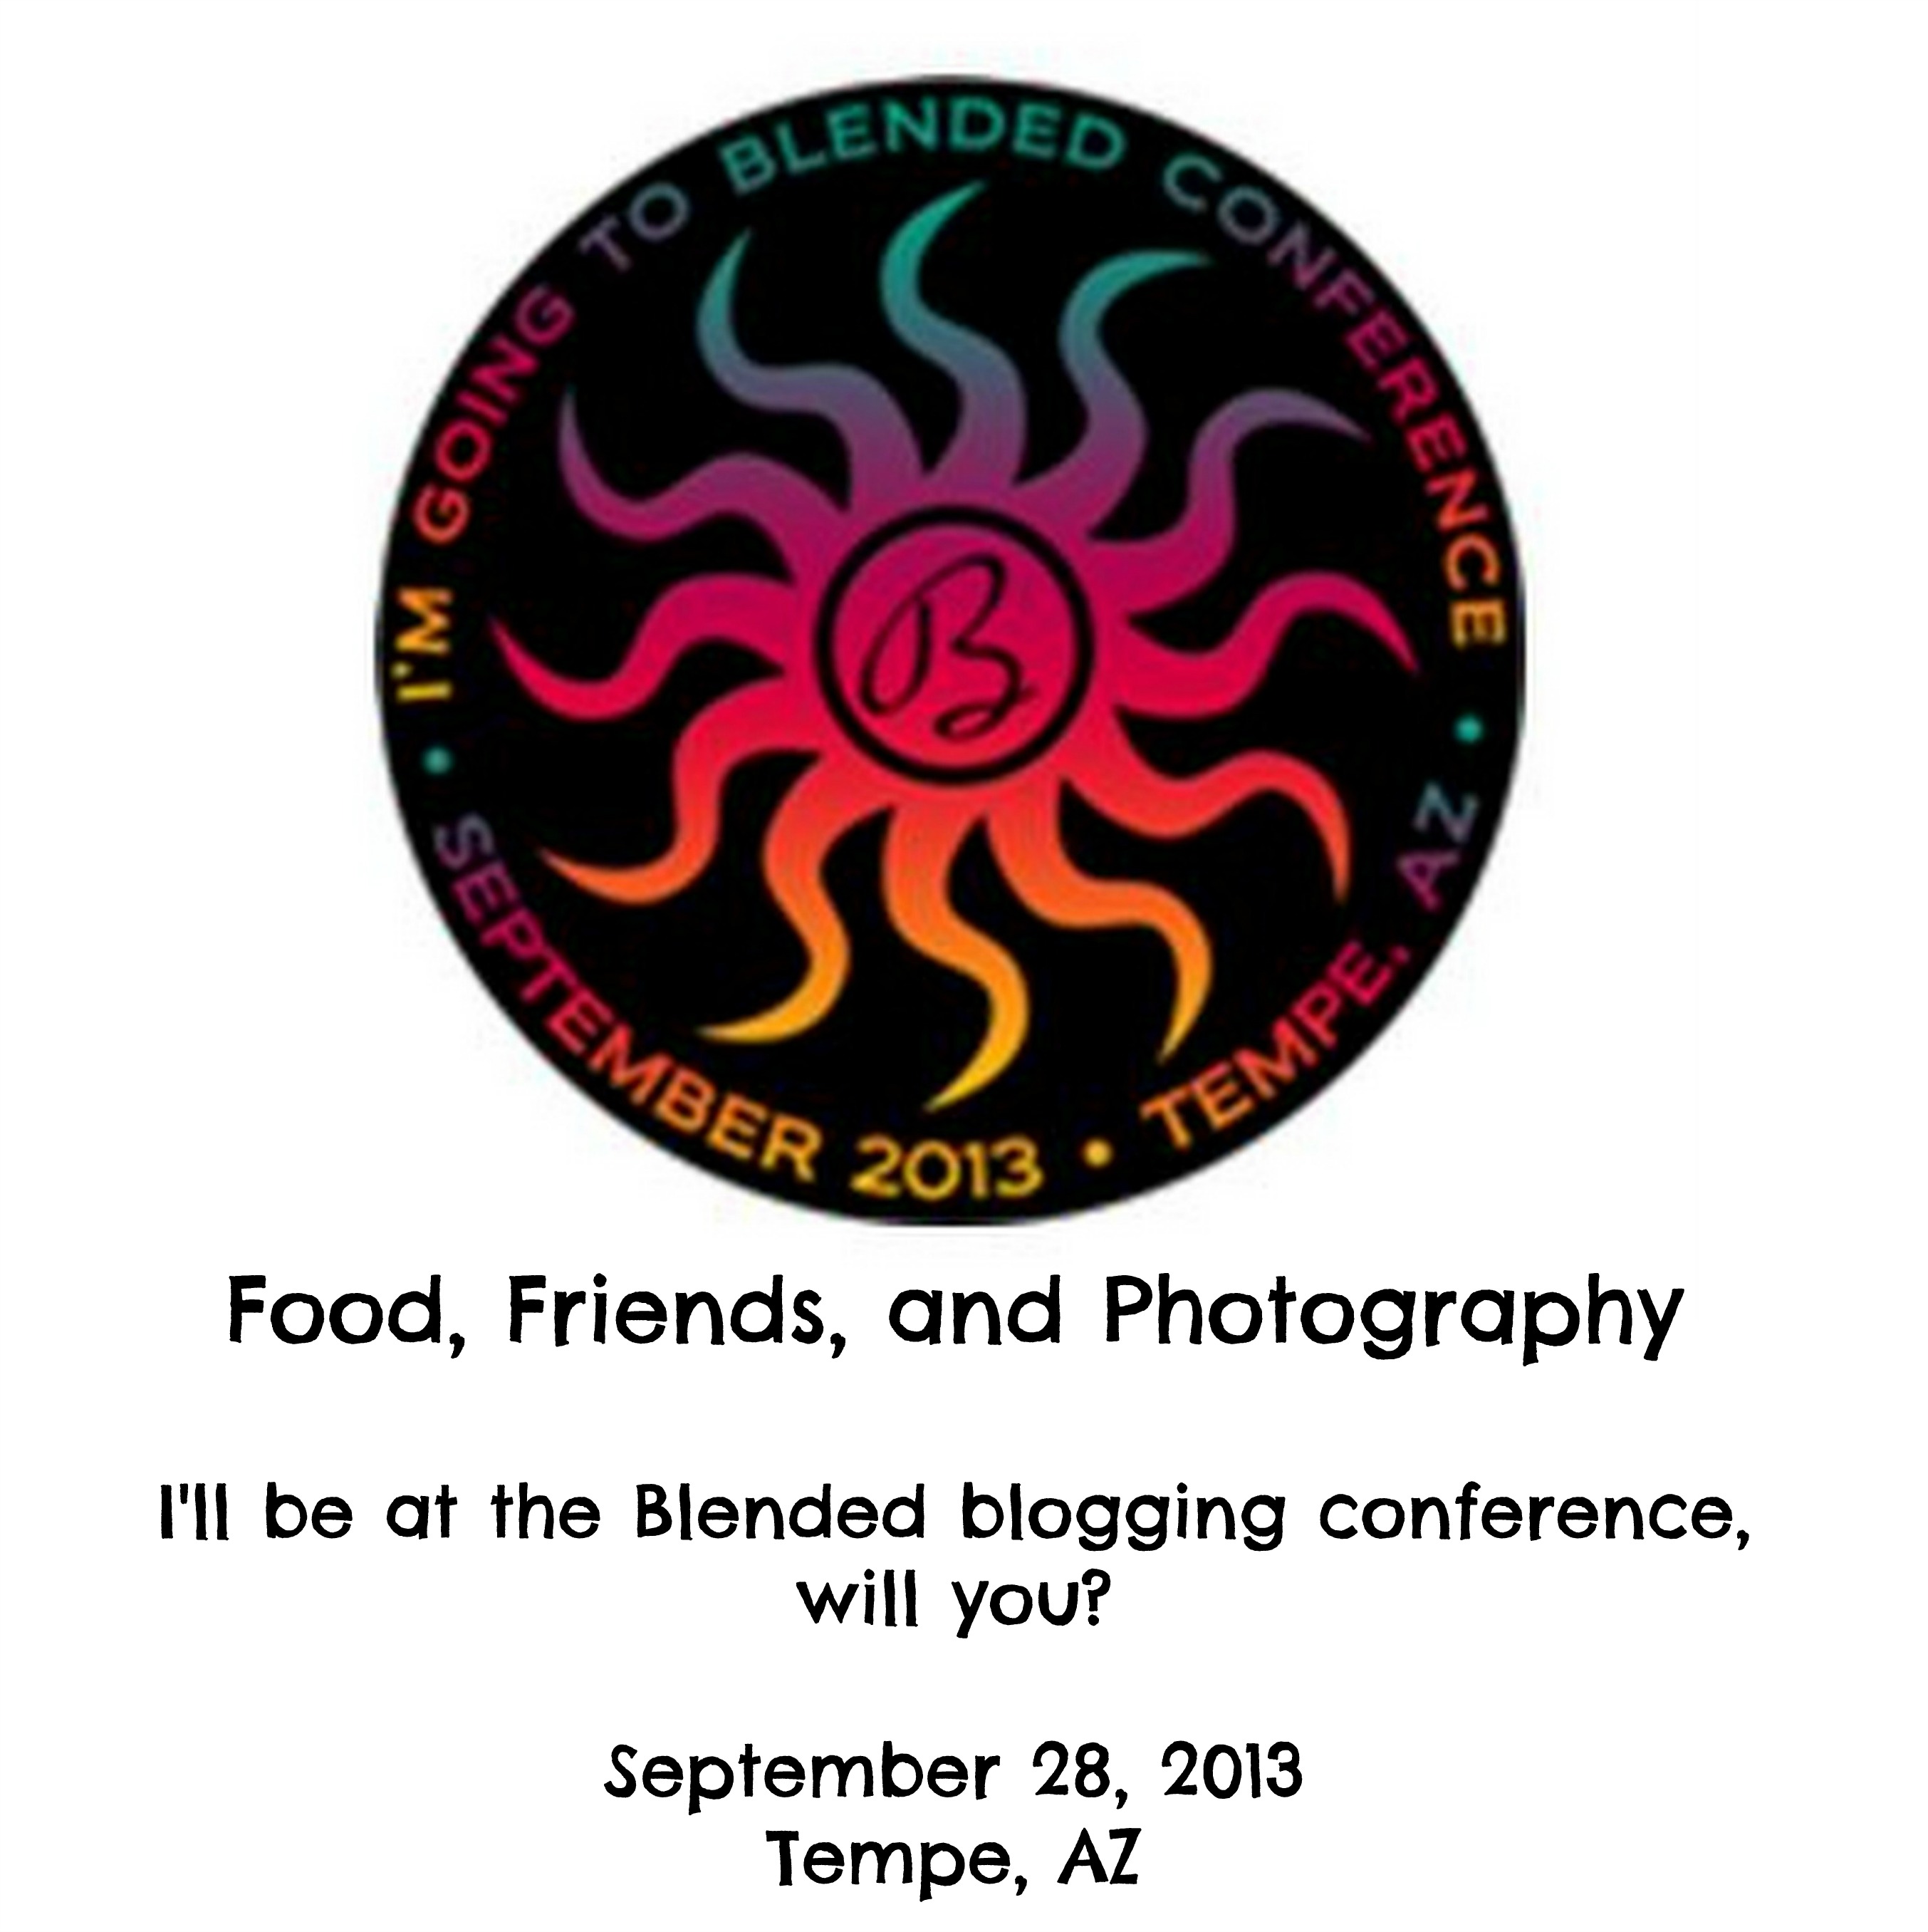 Blended blogging conference, September 28, 2013 in Arizona (3)